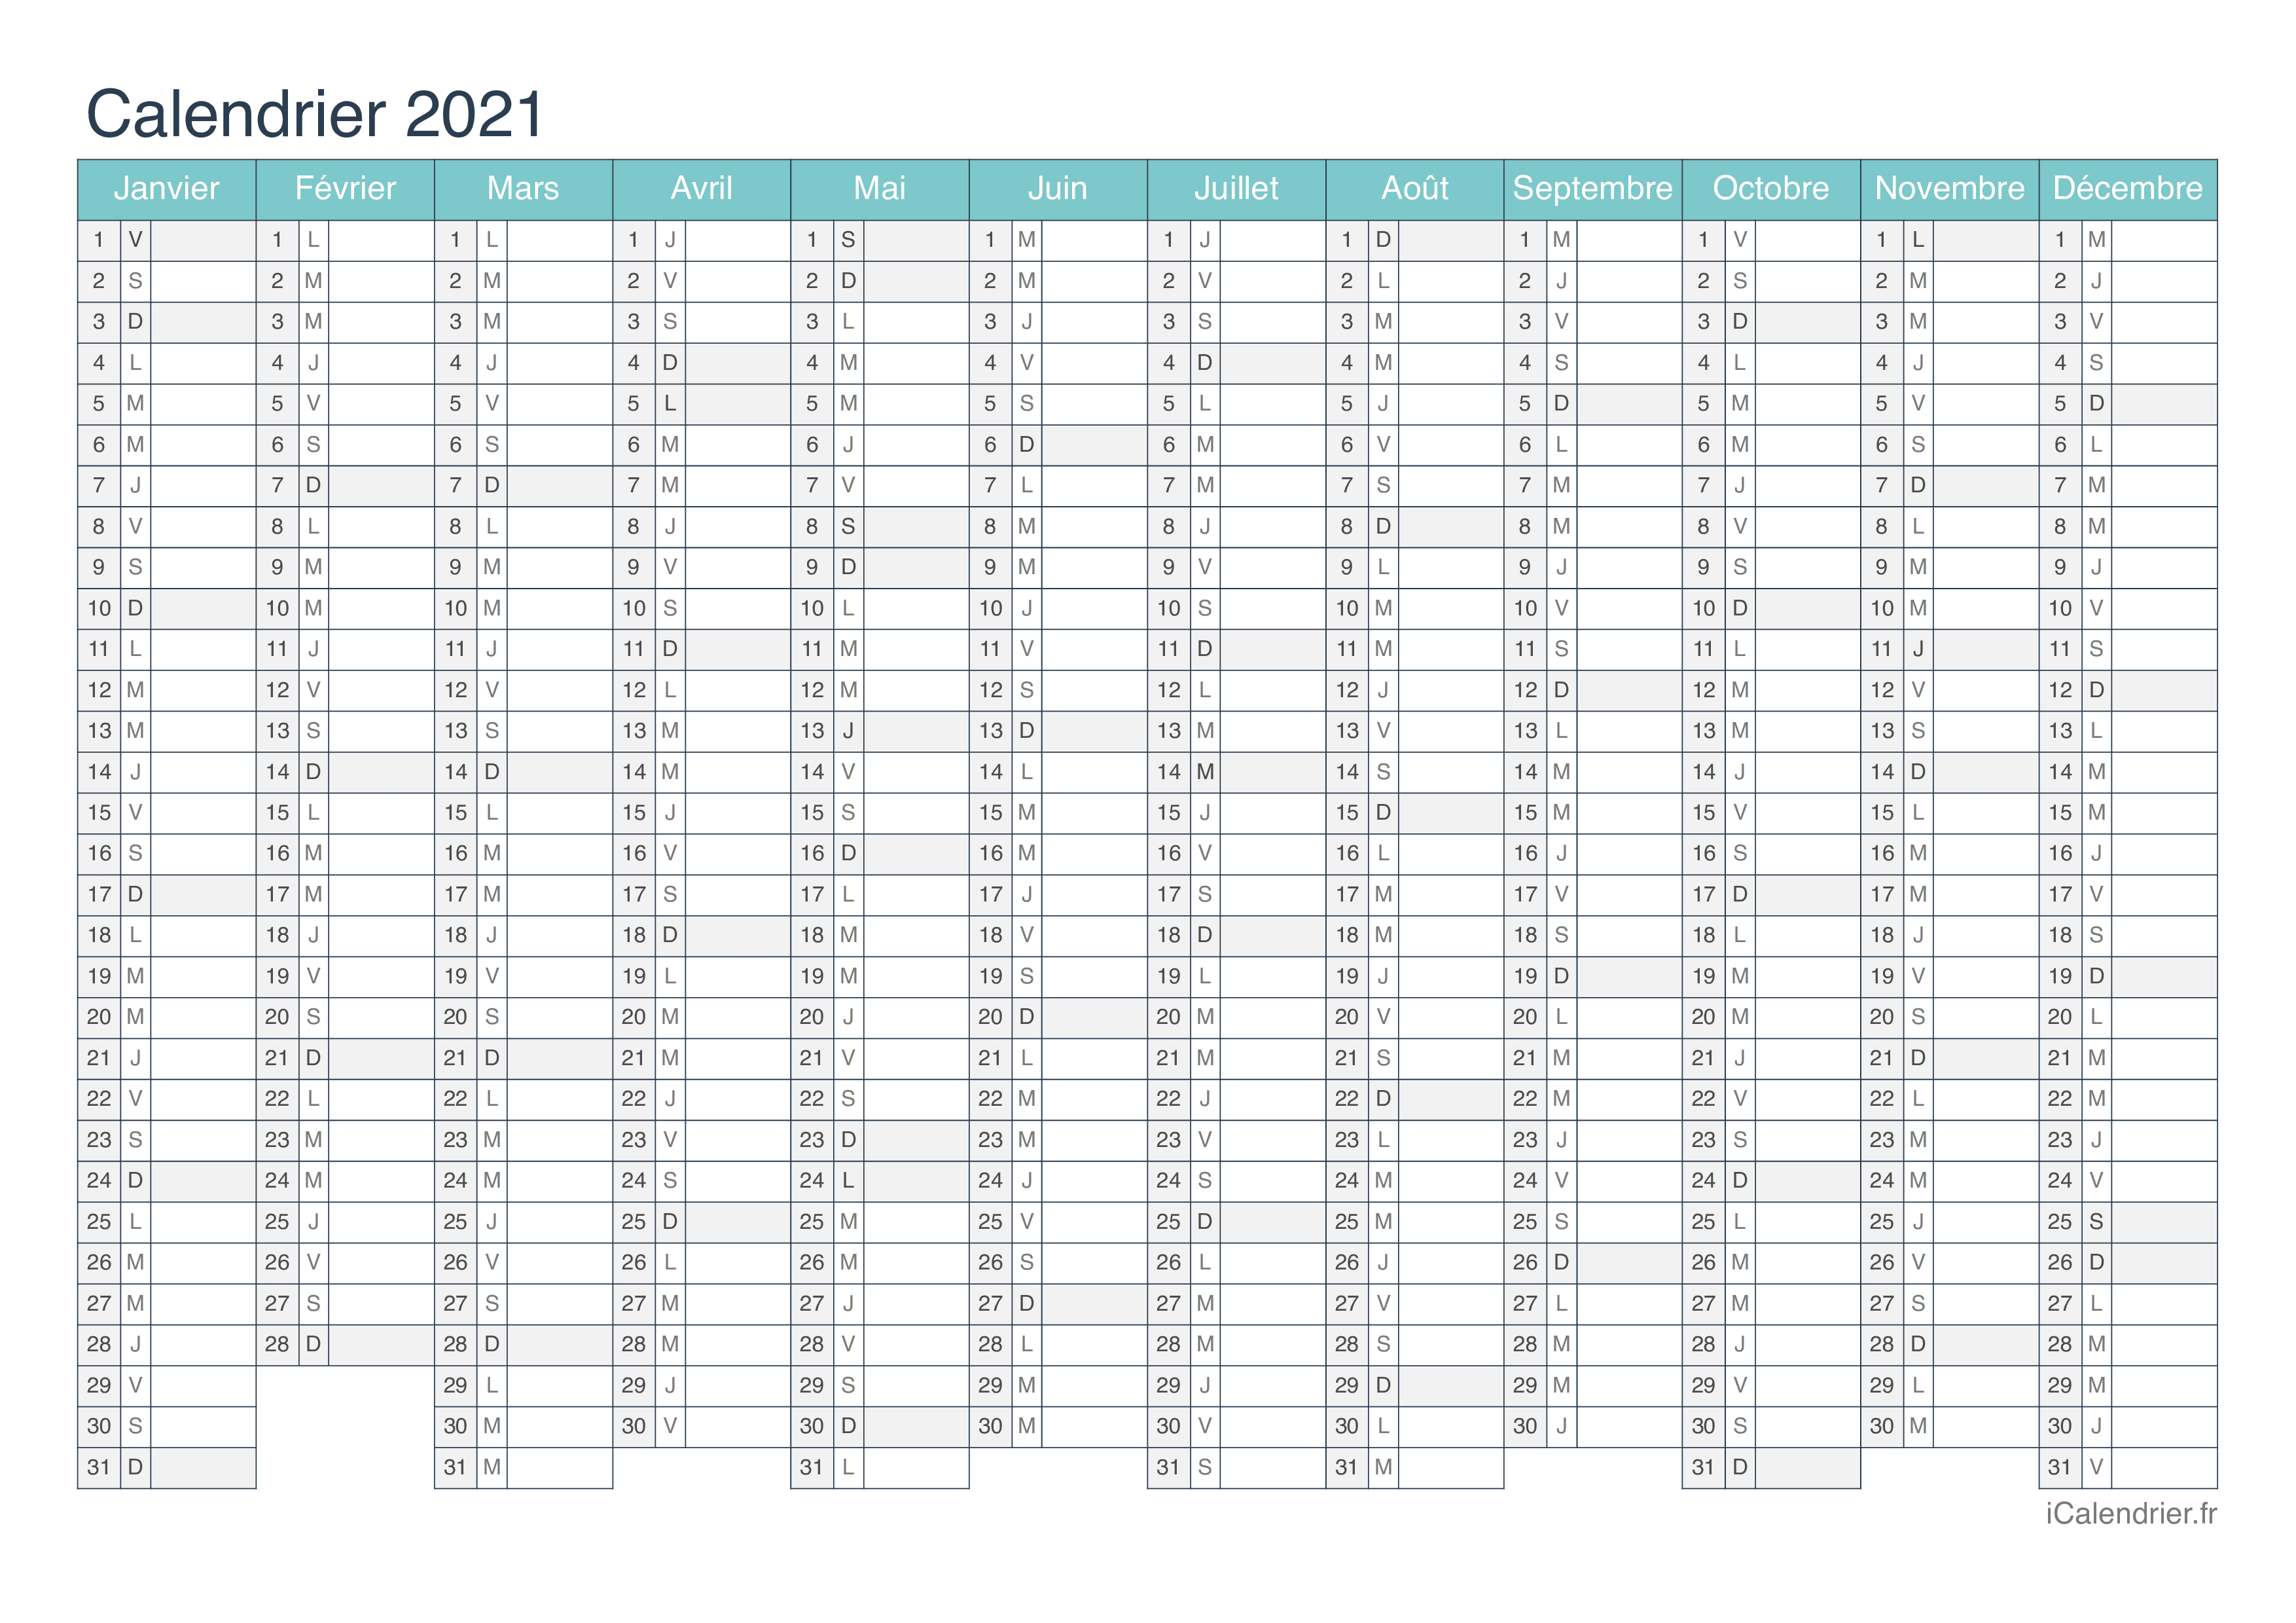 Calendrier 2021 12 Mois Calendrier 2021 à imprimer PDF et Excel   iCalendrier